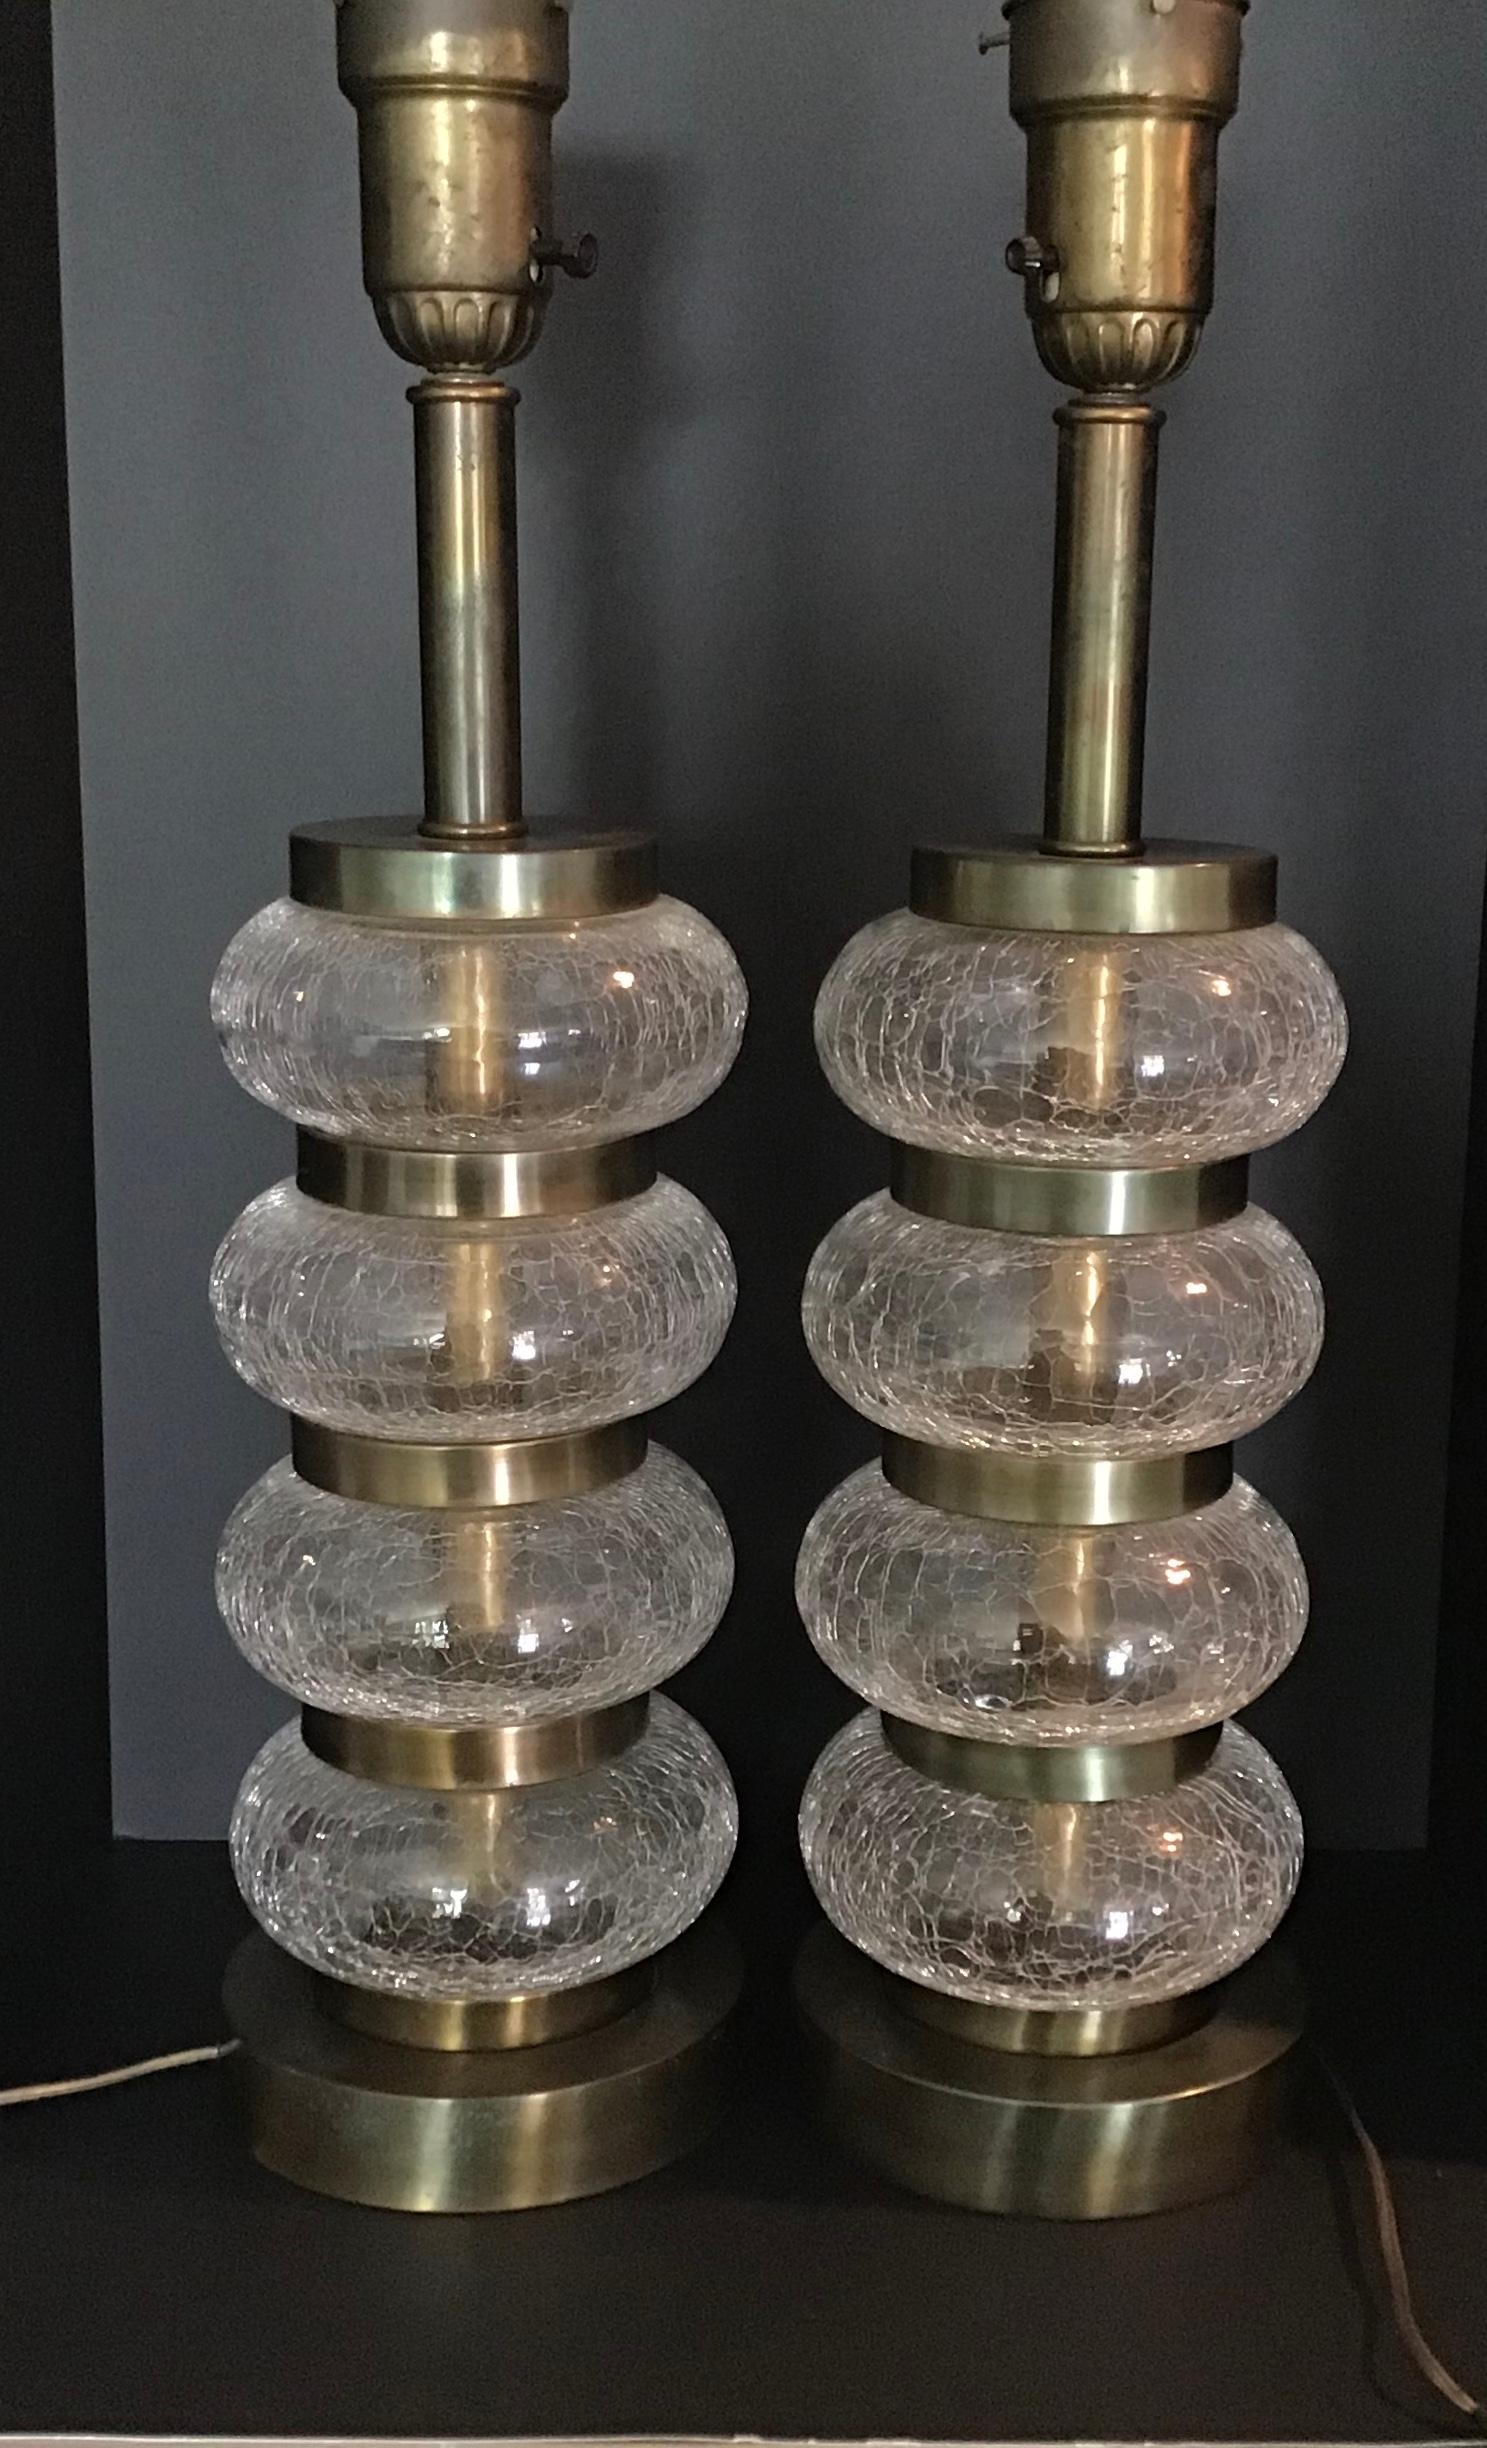 Tolles originales Lampenpaar der Paul Hanson Lighting Company aus den 1950er Jahren. Die Lampen sind alle original, einschließlich der Beschläge und Schirmauflagen. Das Glas strahlt, wenn das Licht auf das Craquelé-Design trifft. Die Glasflächen